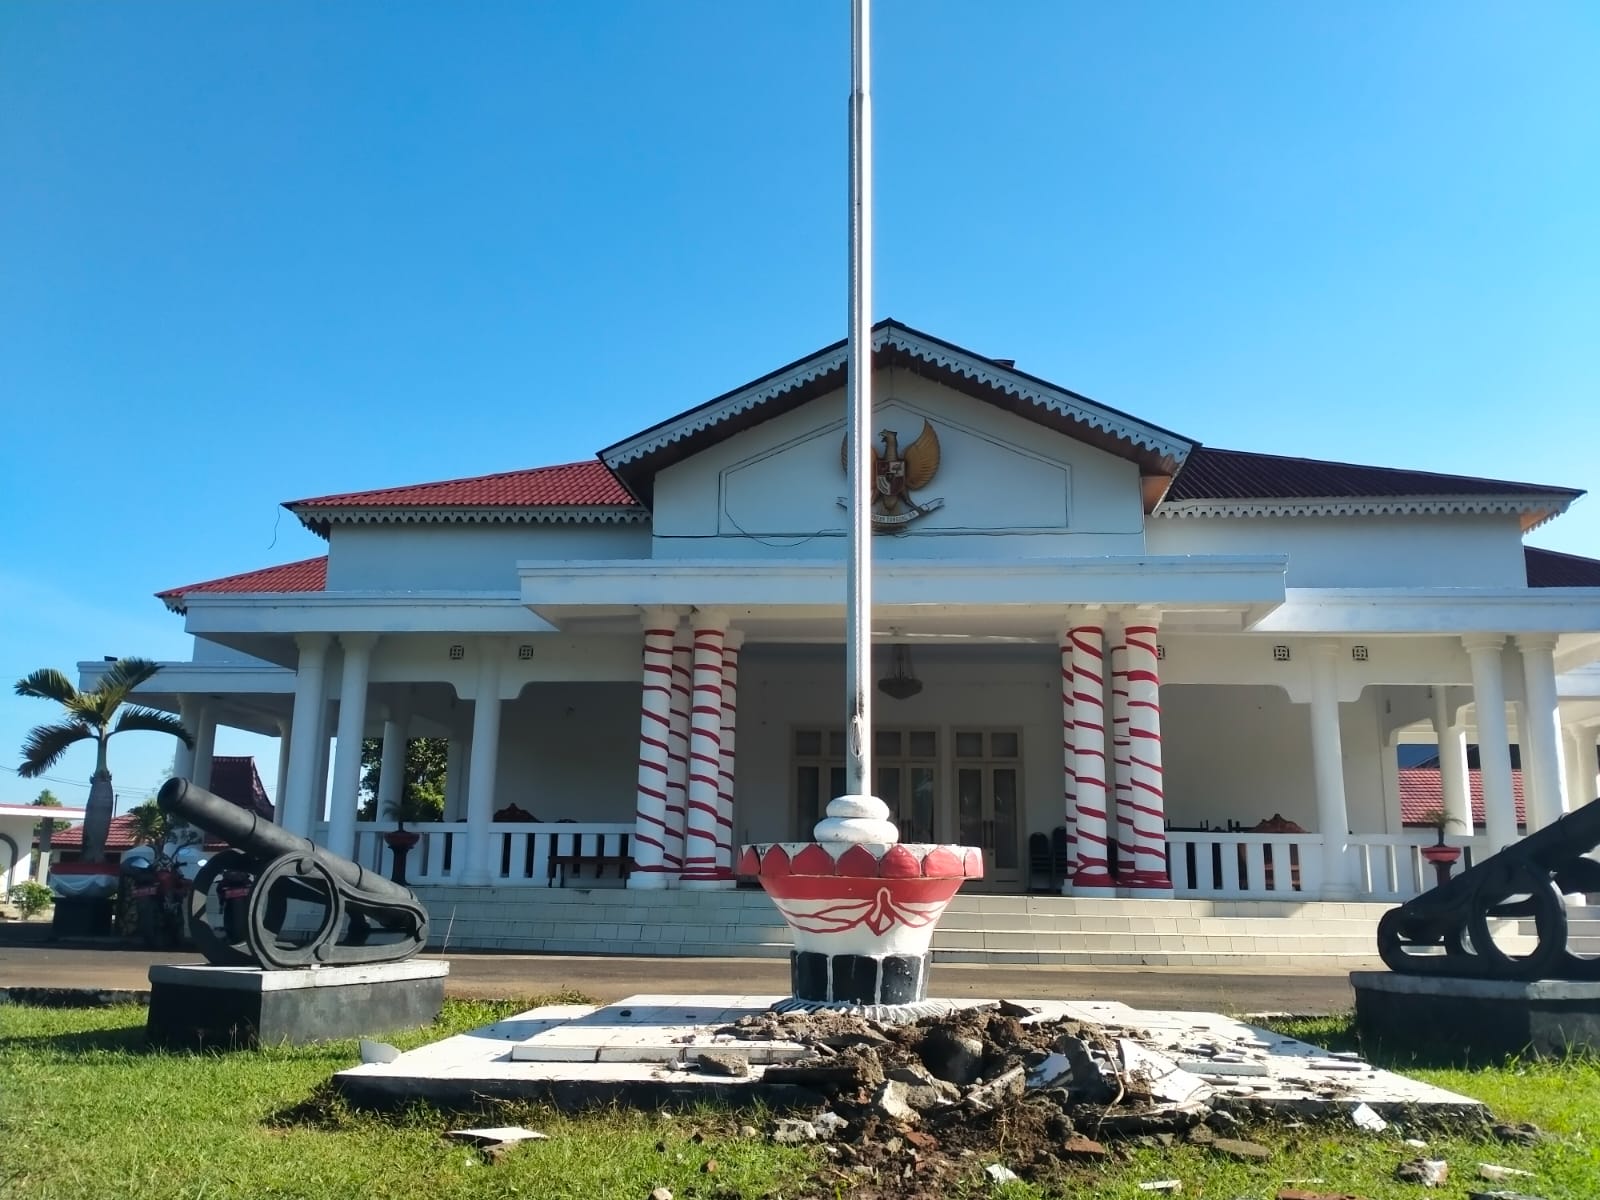 Rumah Dinas Bupati Bengkulu Utara Disambar Petir, Lantai Tiang Bendera Hancur